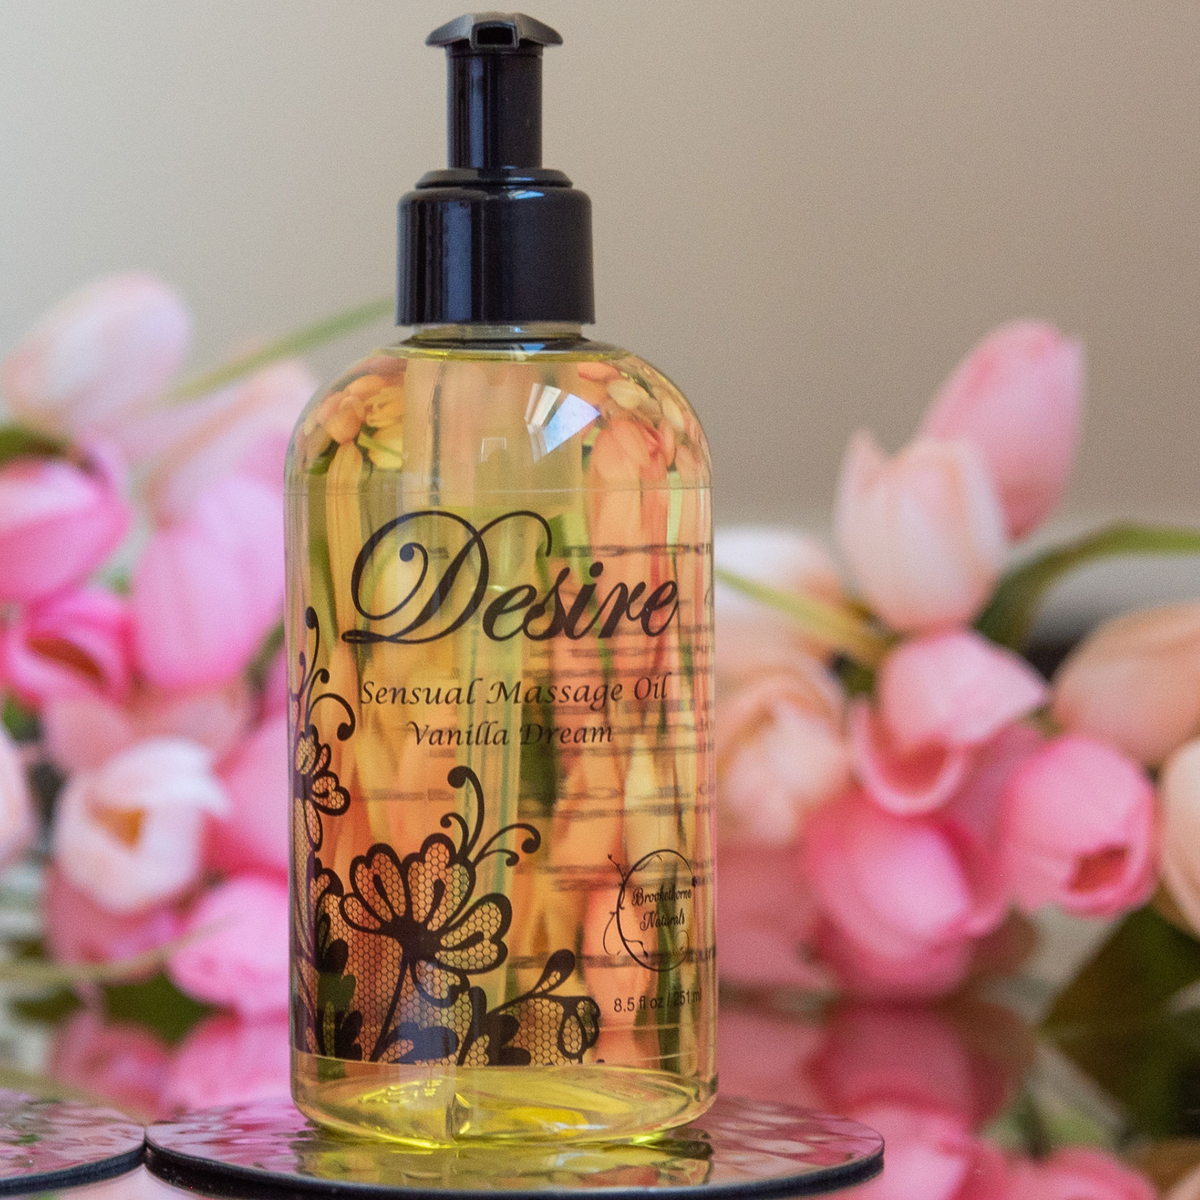 Desire Lavender Sensual Massage Oil